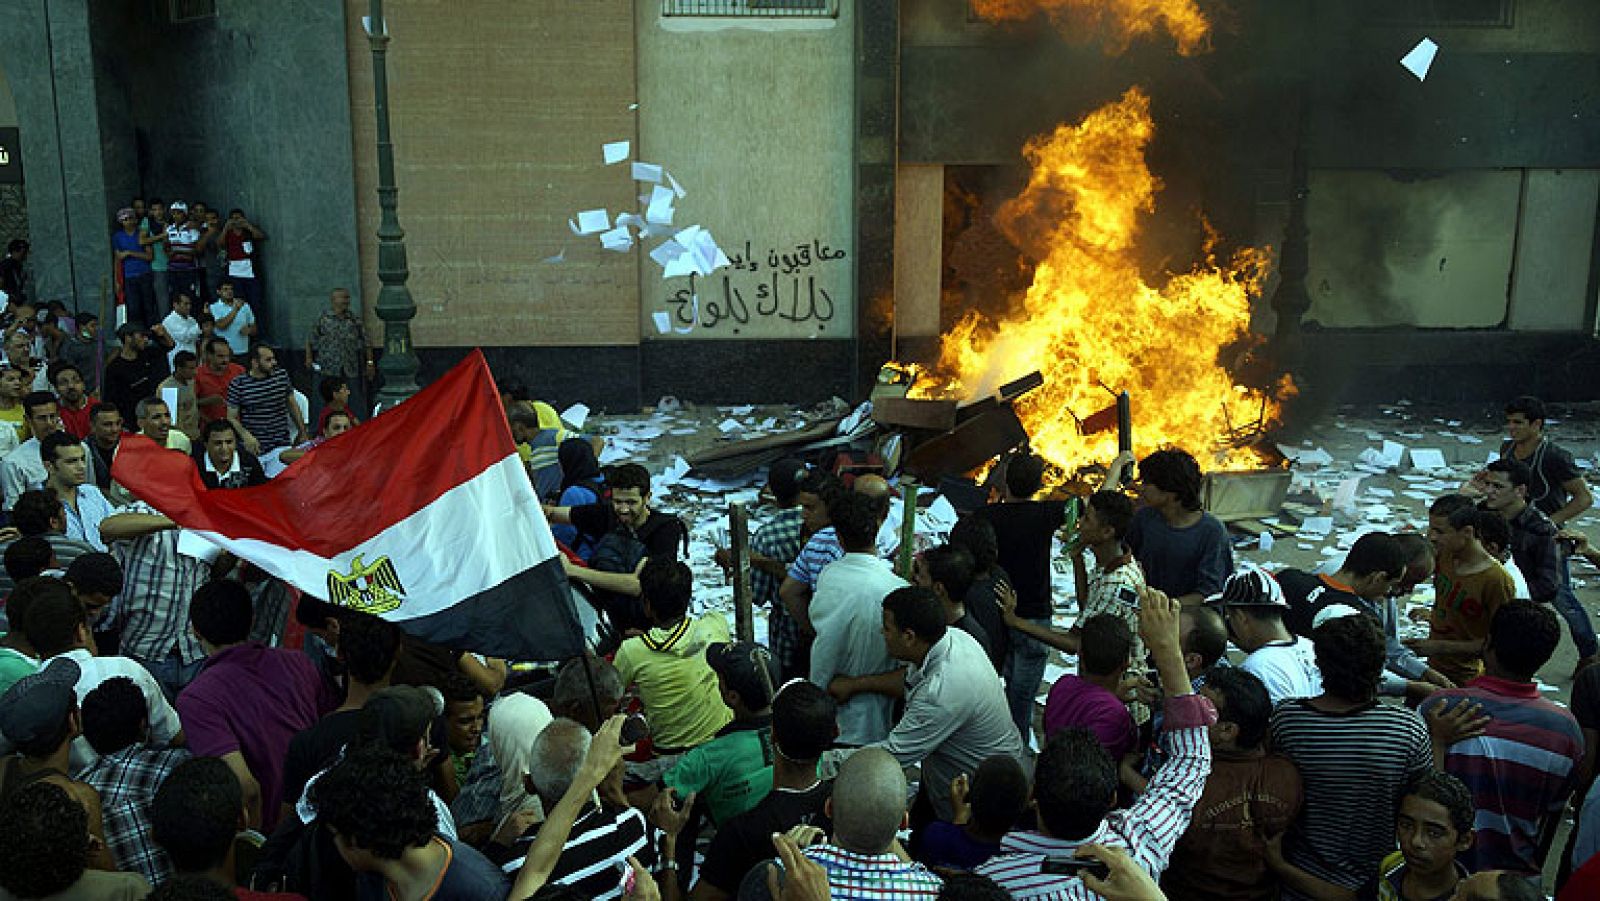  Al menos una persona ha muerto este viernes en Egipto en los enfrentamientos entre partidarios del presidente, Mohamed Mursi, y opositores en la ciudad mediterránea de Alejandría. Los manifestantes contra Mursi han incendiado la sede del gubernamental Partido Libertad y Justicia (PLJ).